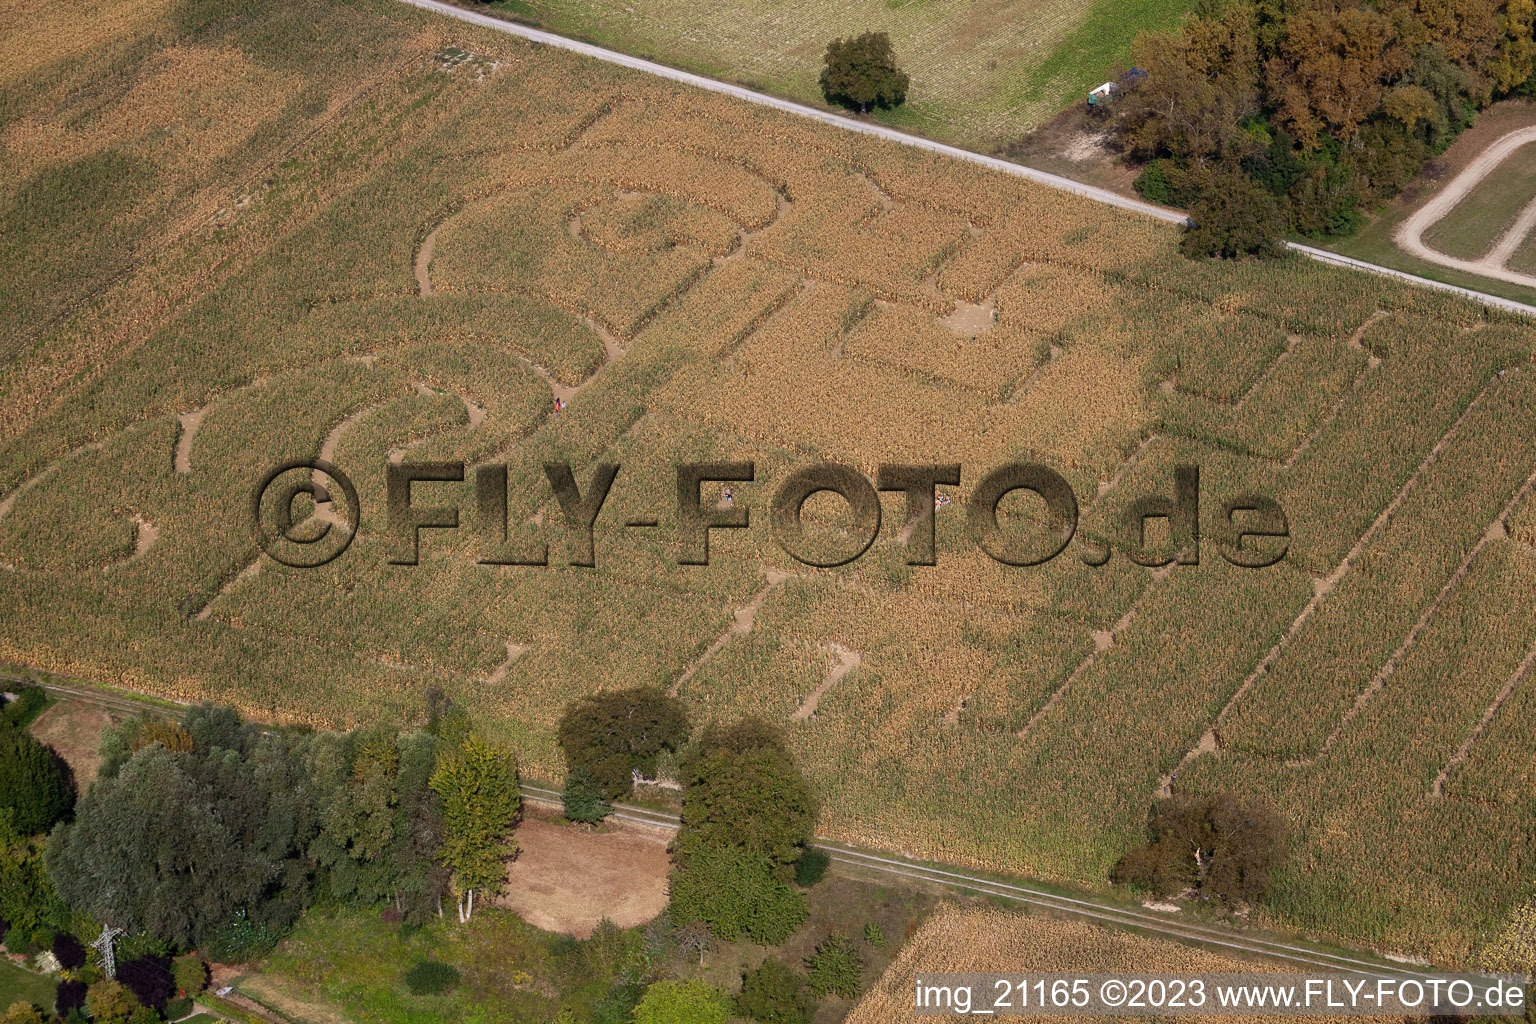 Leimersheim im Bundesland Rheinland-Pfalz, Deutschland von einer Drohne aus